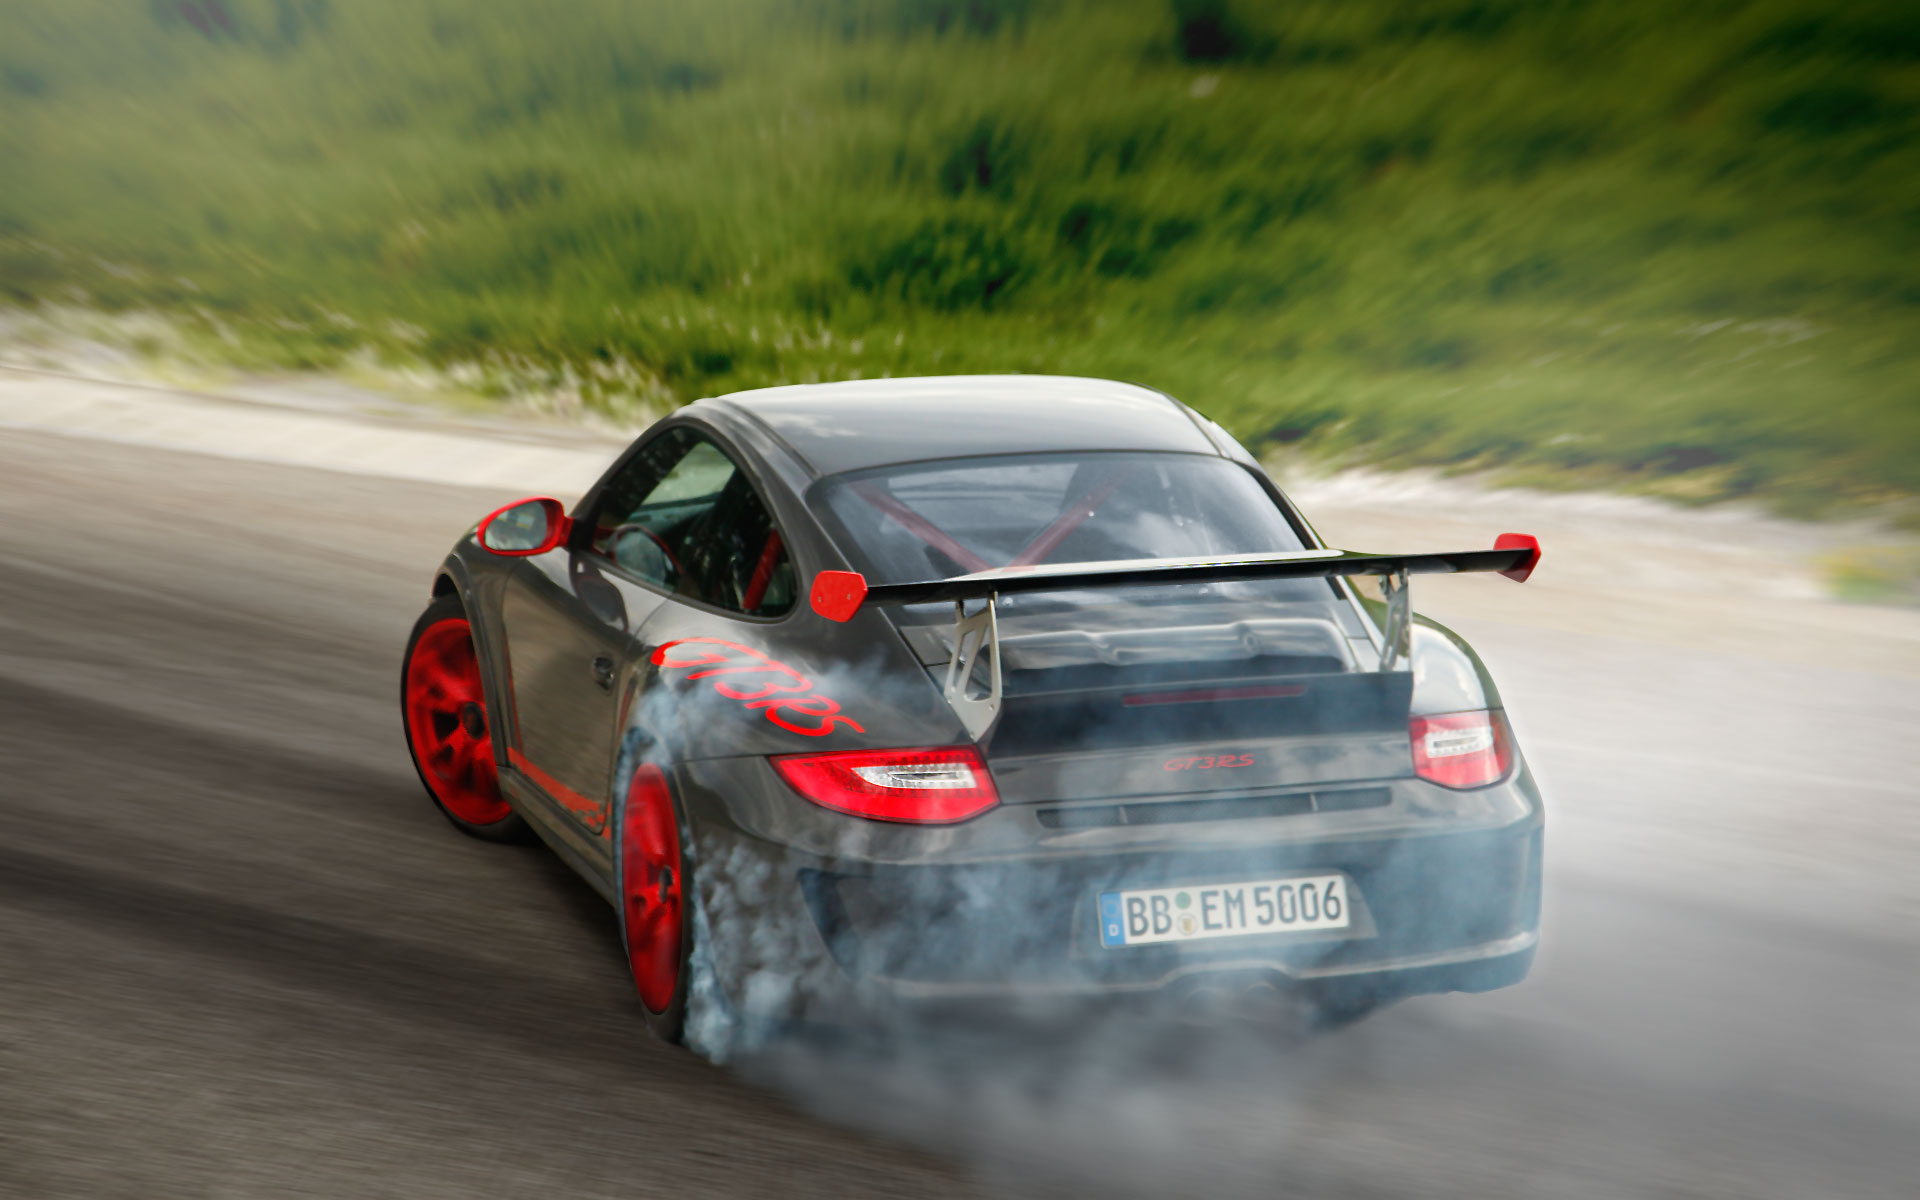 cars, drifting cars, vehicles, Porsche 911 GT3, Porsche 911 GT3 RS, drift, rear angle view - desktop wallpaper